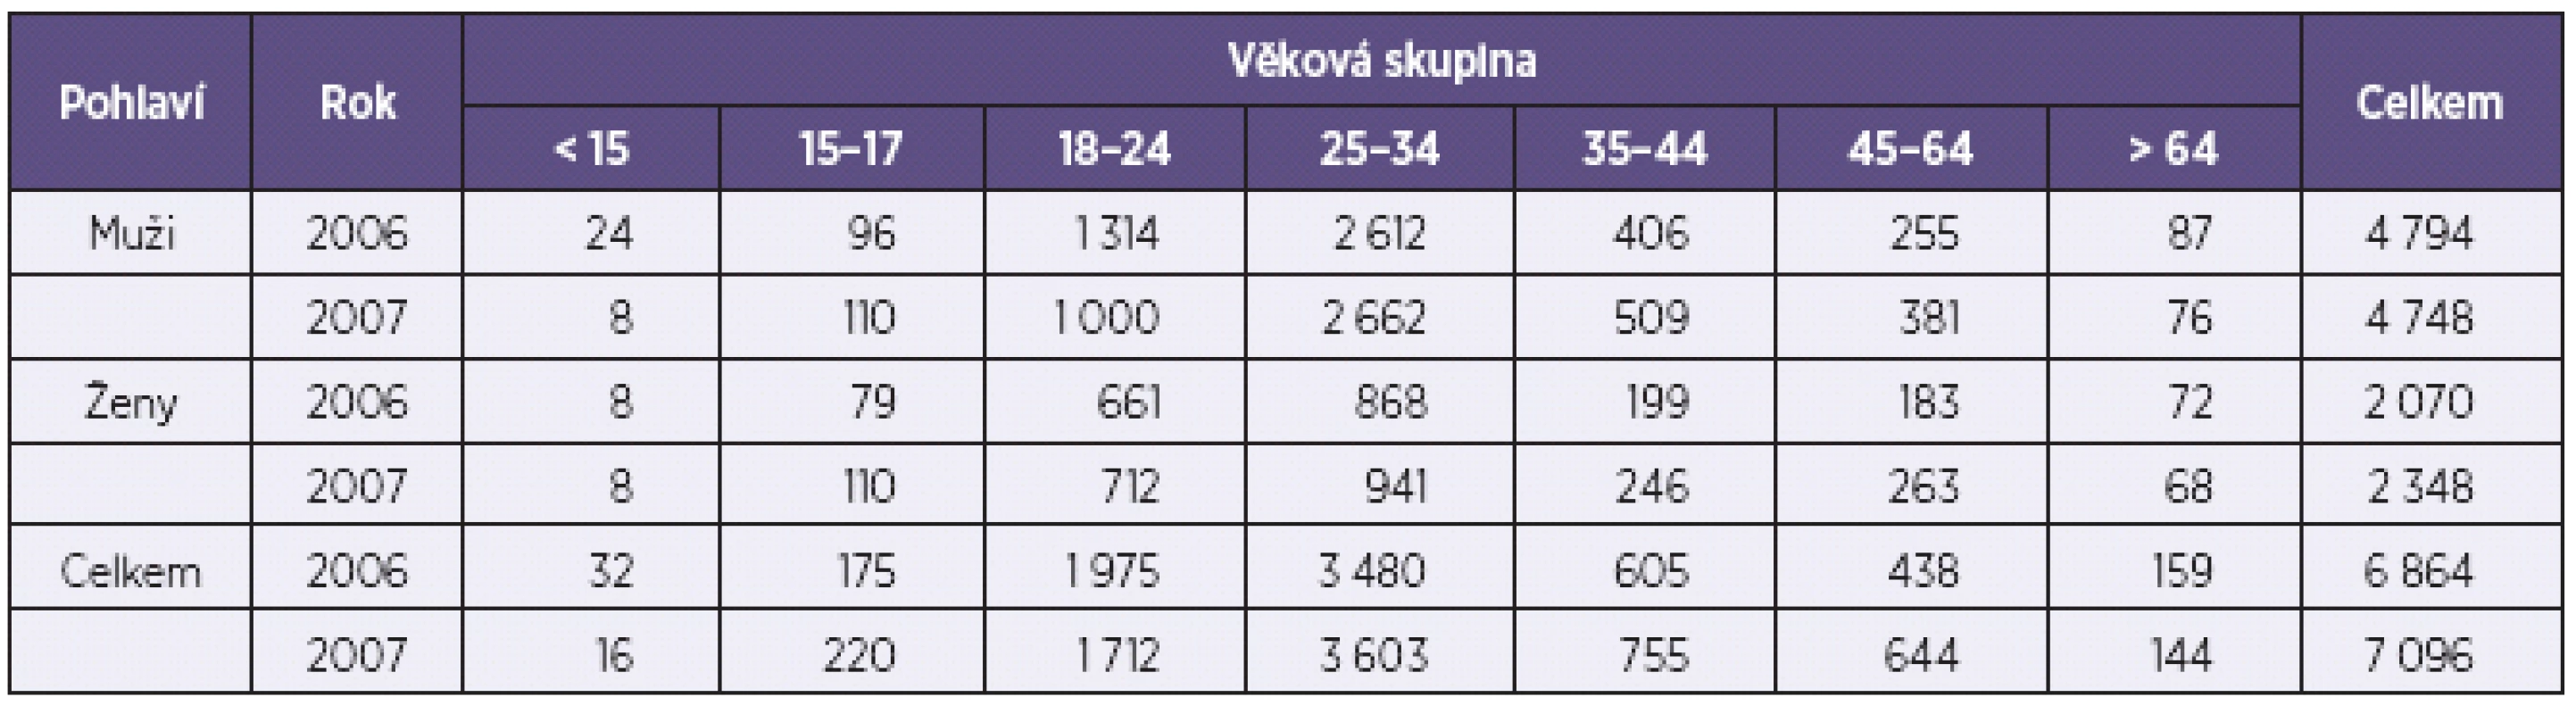 Rozložení středního odhadu problémových uživatelů opiátů/opioidů v ČR v letech 2006 a 2007 podle věkových skupin a pohlaví
Table 5. Age and sex distribution of central PUO estimates in the Czech Republic in 2006 and 2007